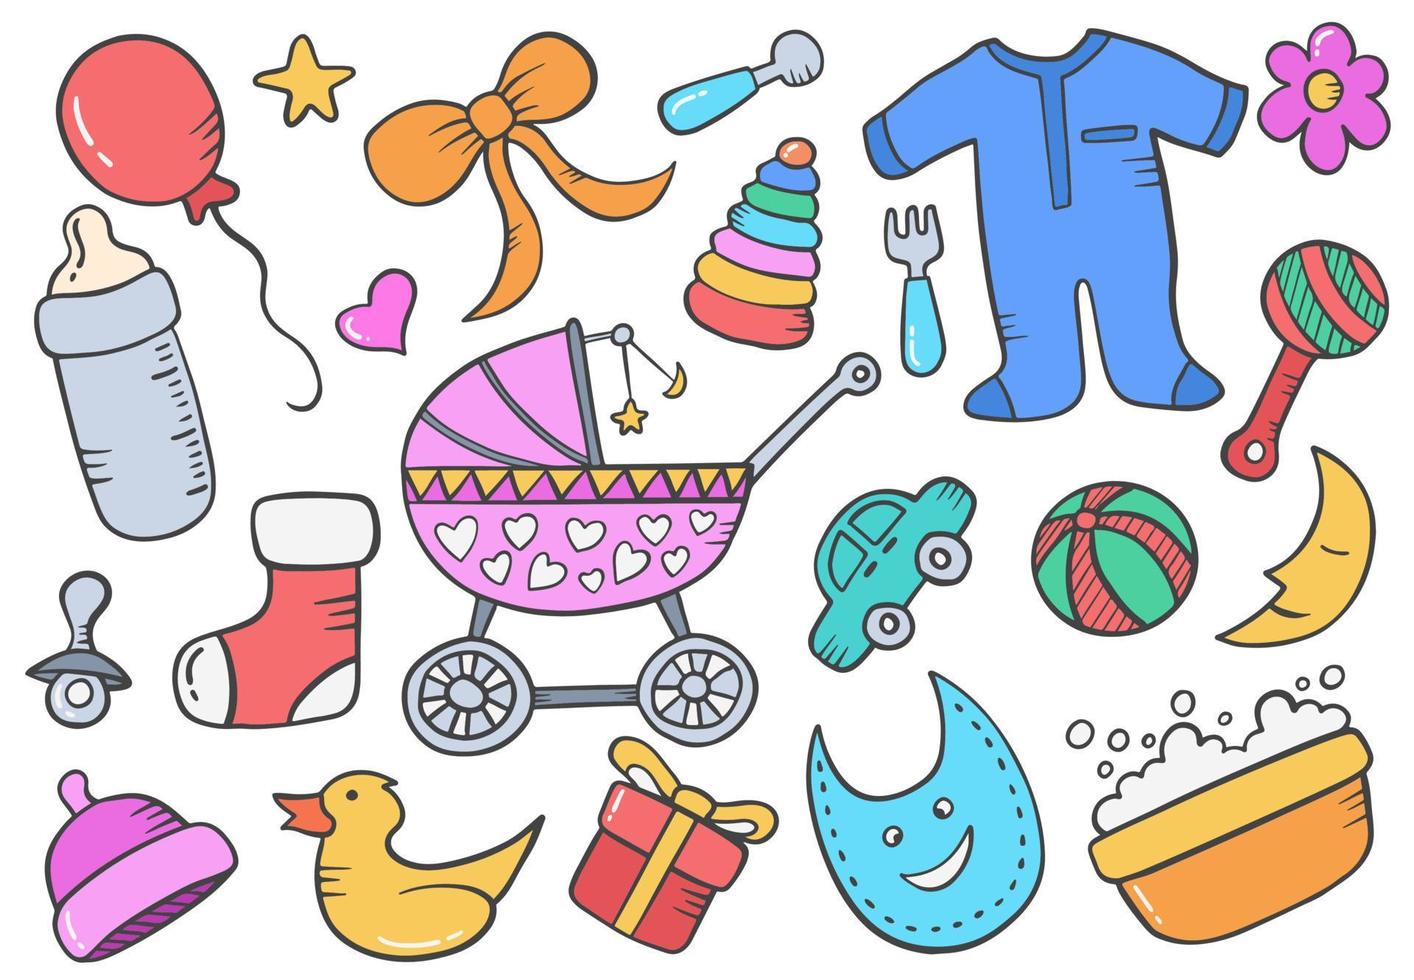 bebê crianças recém-nascidas conceito de doodle com estilo de desenho desenhado à mão e estilo colorido vetor